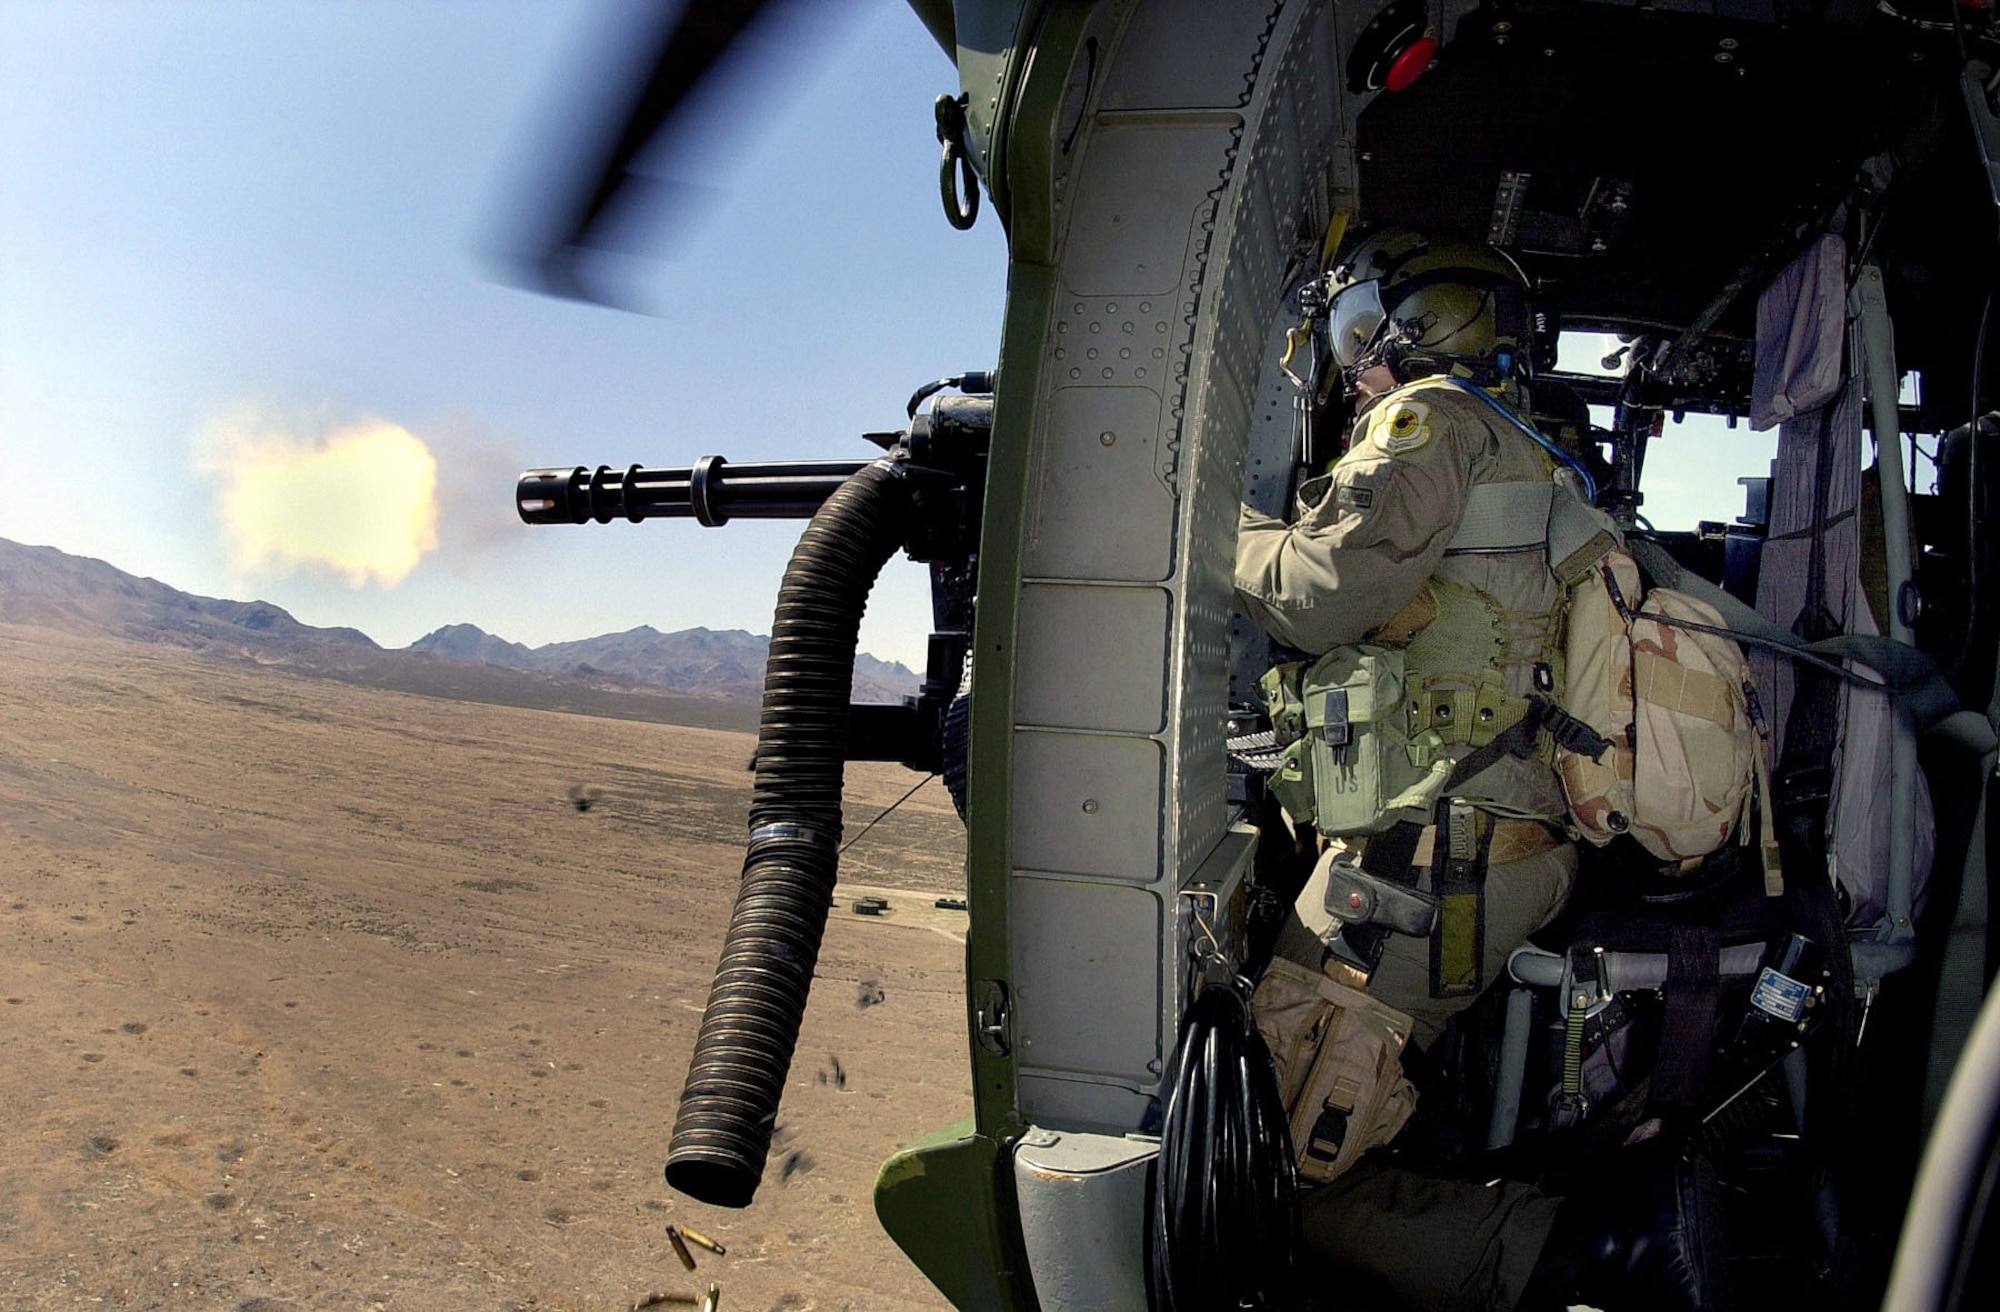 66th Rescue Squadron gunner firing 7.62mm minigun. (U.S. Air Force photo)